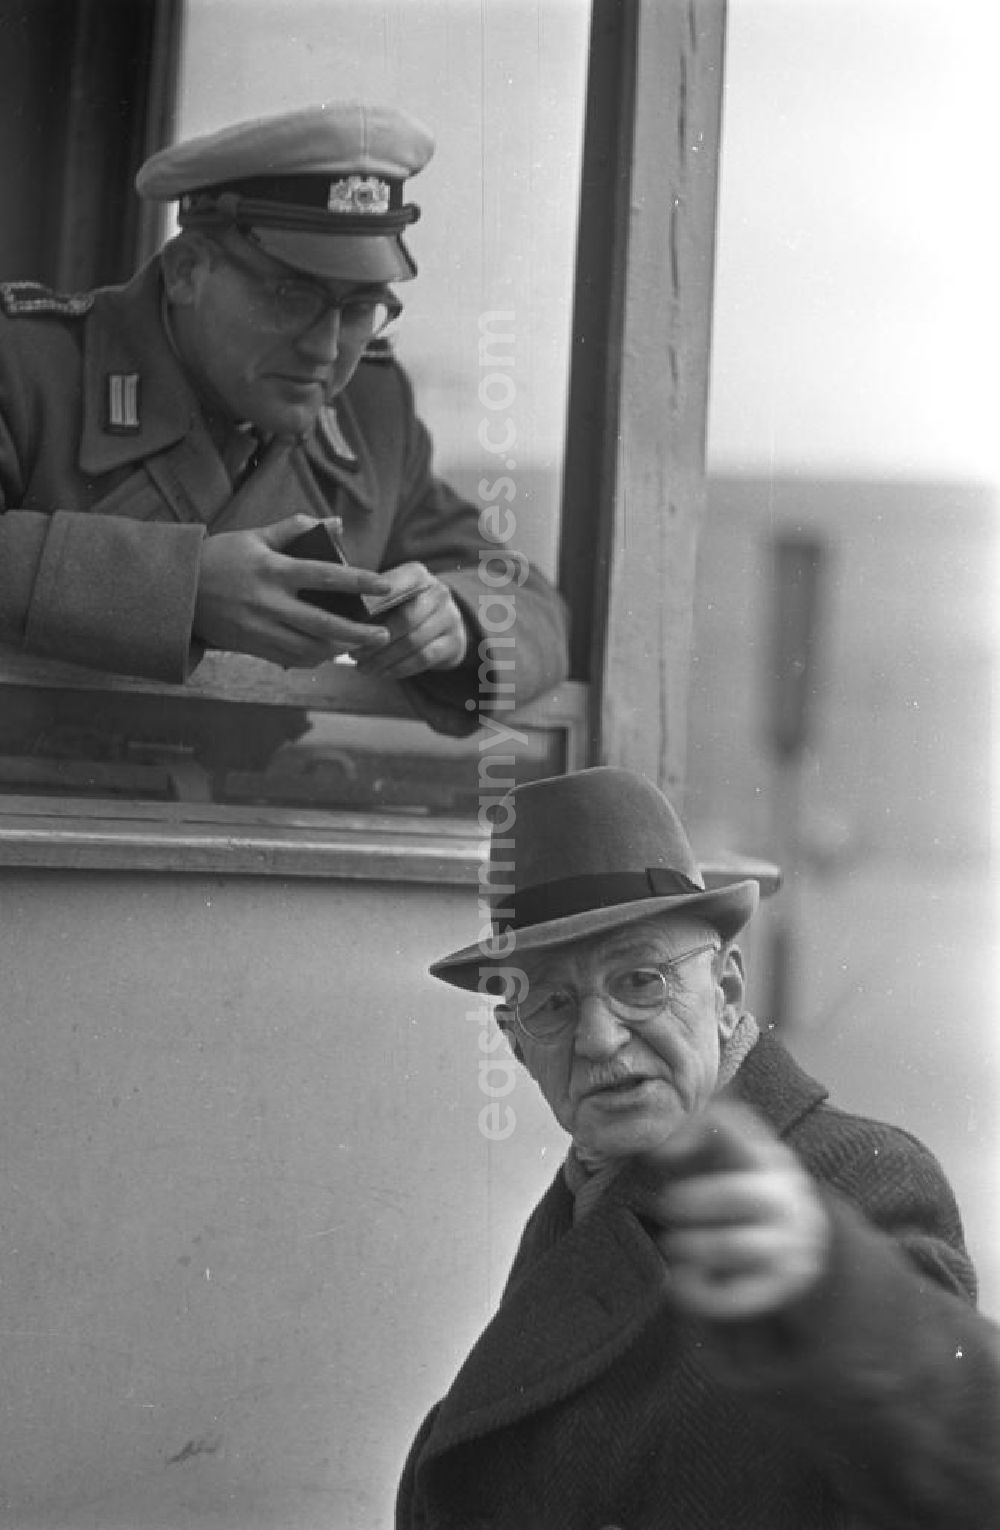 GDR picture archive: Leipzig - Ein Polizist kontrolliert einen Passanten aus seinem Wachhäuschen am Karl-Marx-Platz in Leipzig.